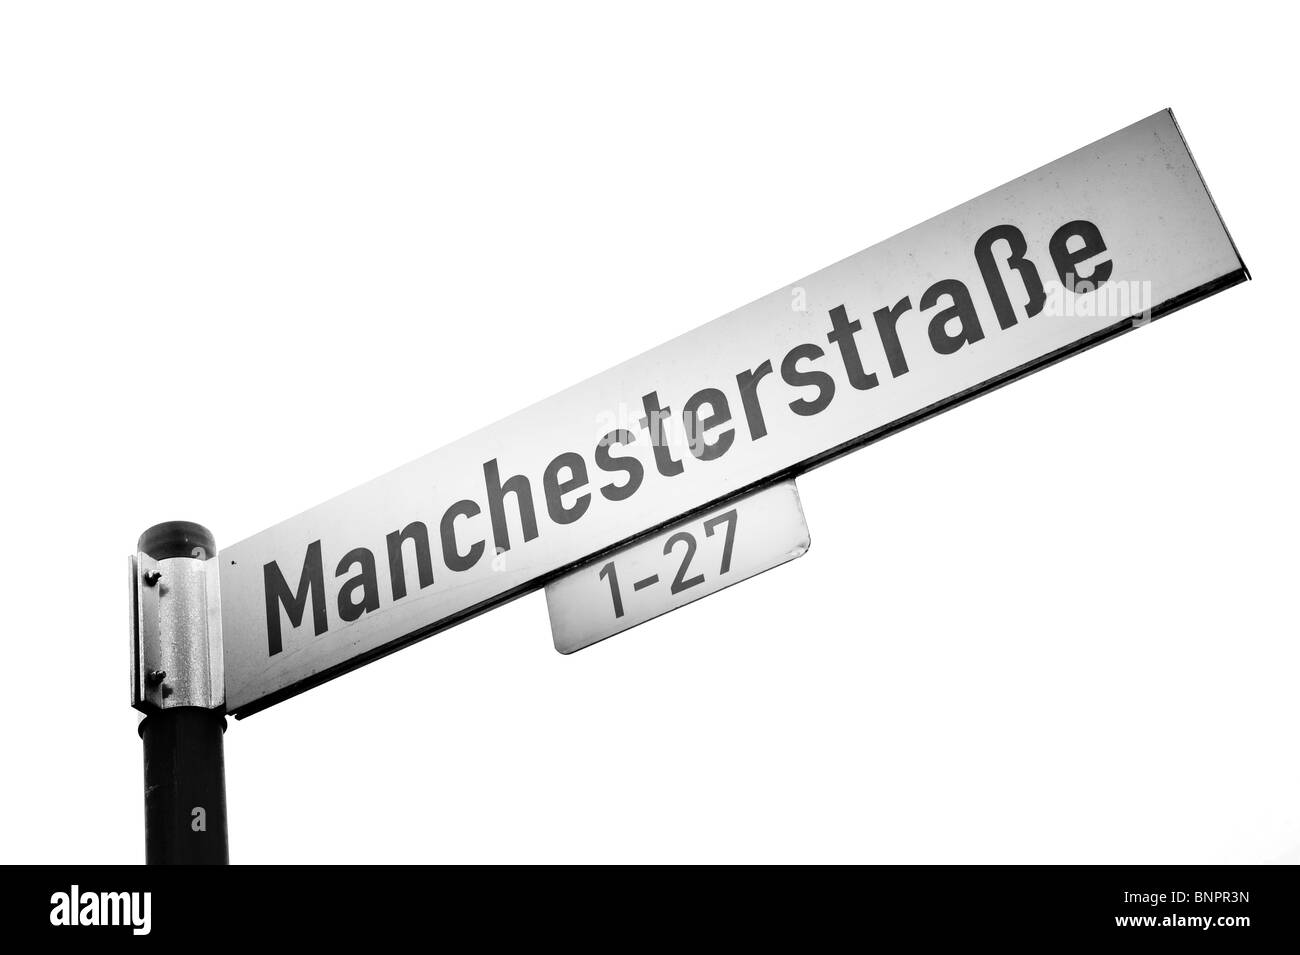 Manchesterstrasse street sign bielefeld allemagne manchester Banque D'Images